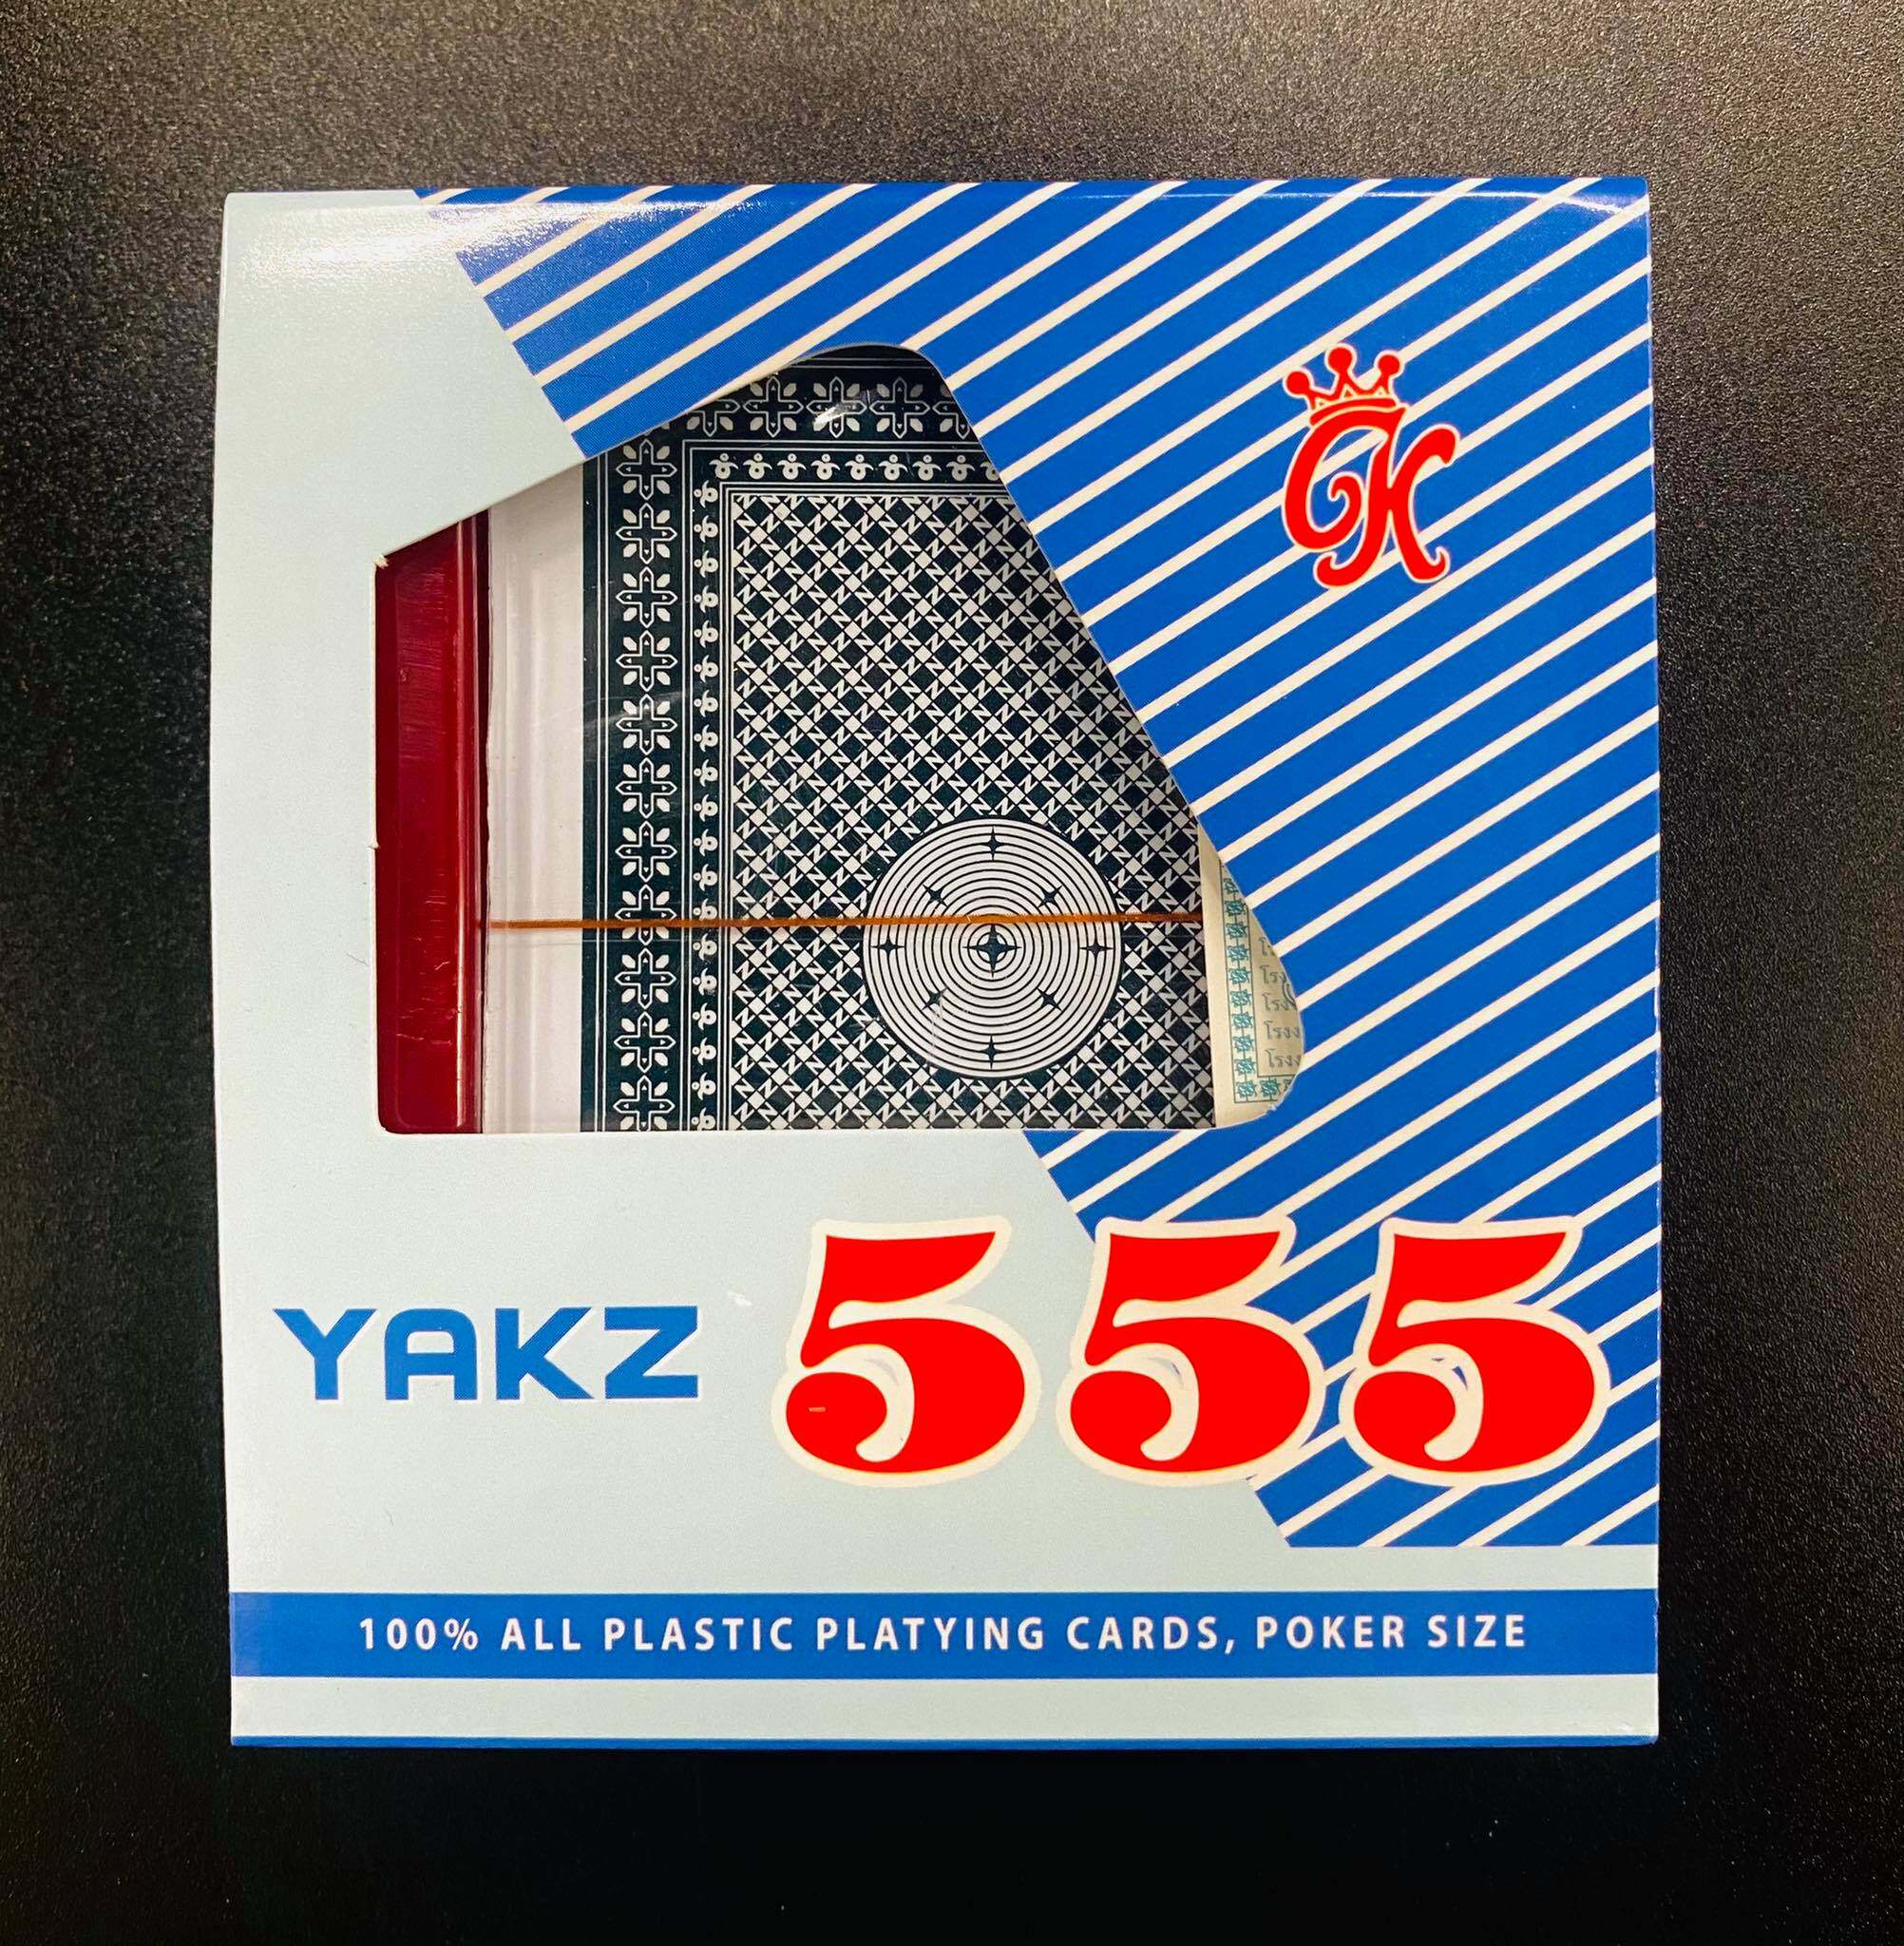 ไพ่ขอบทอง ไพ่ตอง YAKZ 555 พลาสติก PVC หน้าลื่น ขนาดมาตรฐาน